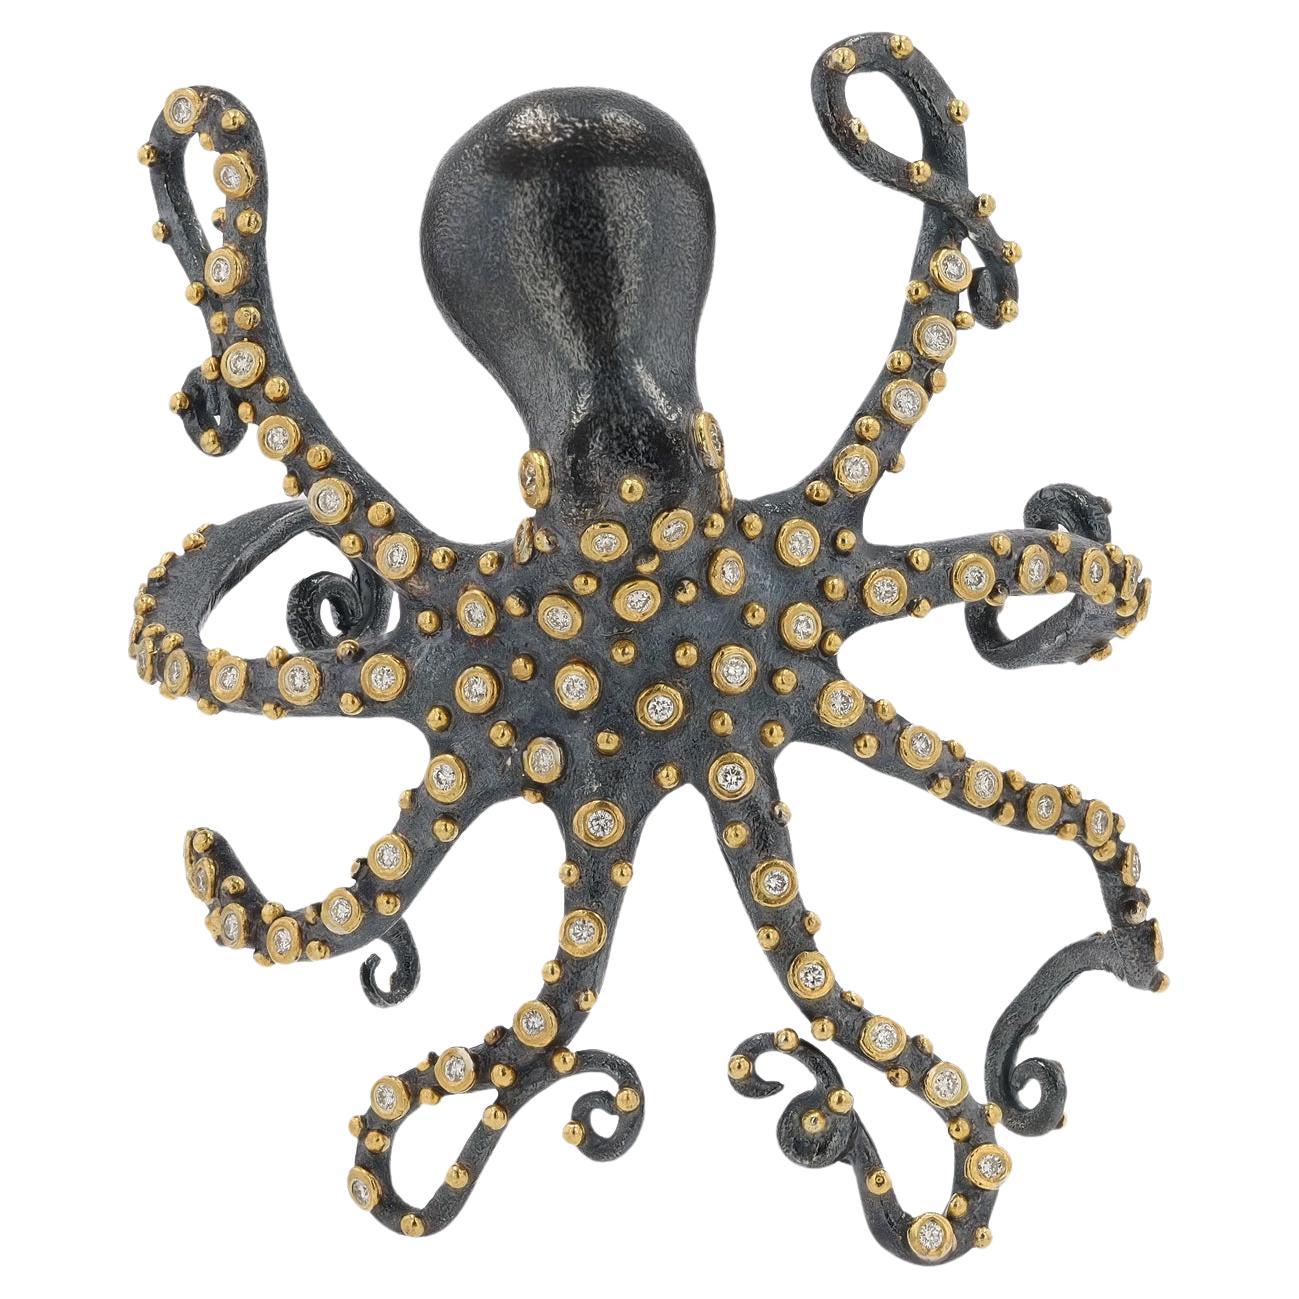 Manchette octope incrustée de diamants, or 24 carats et argent oxydé 